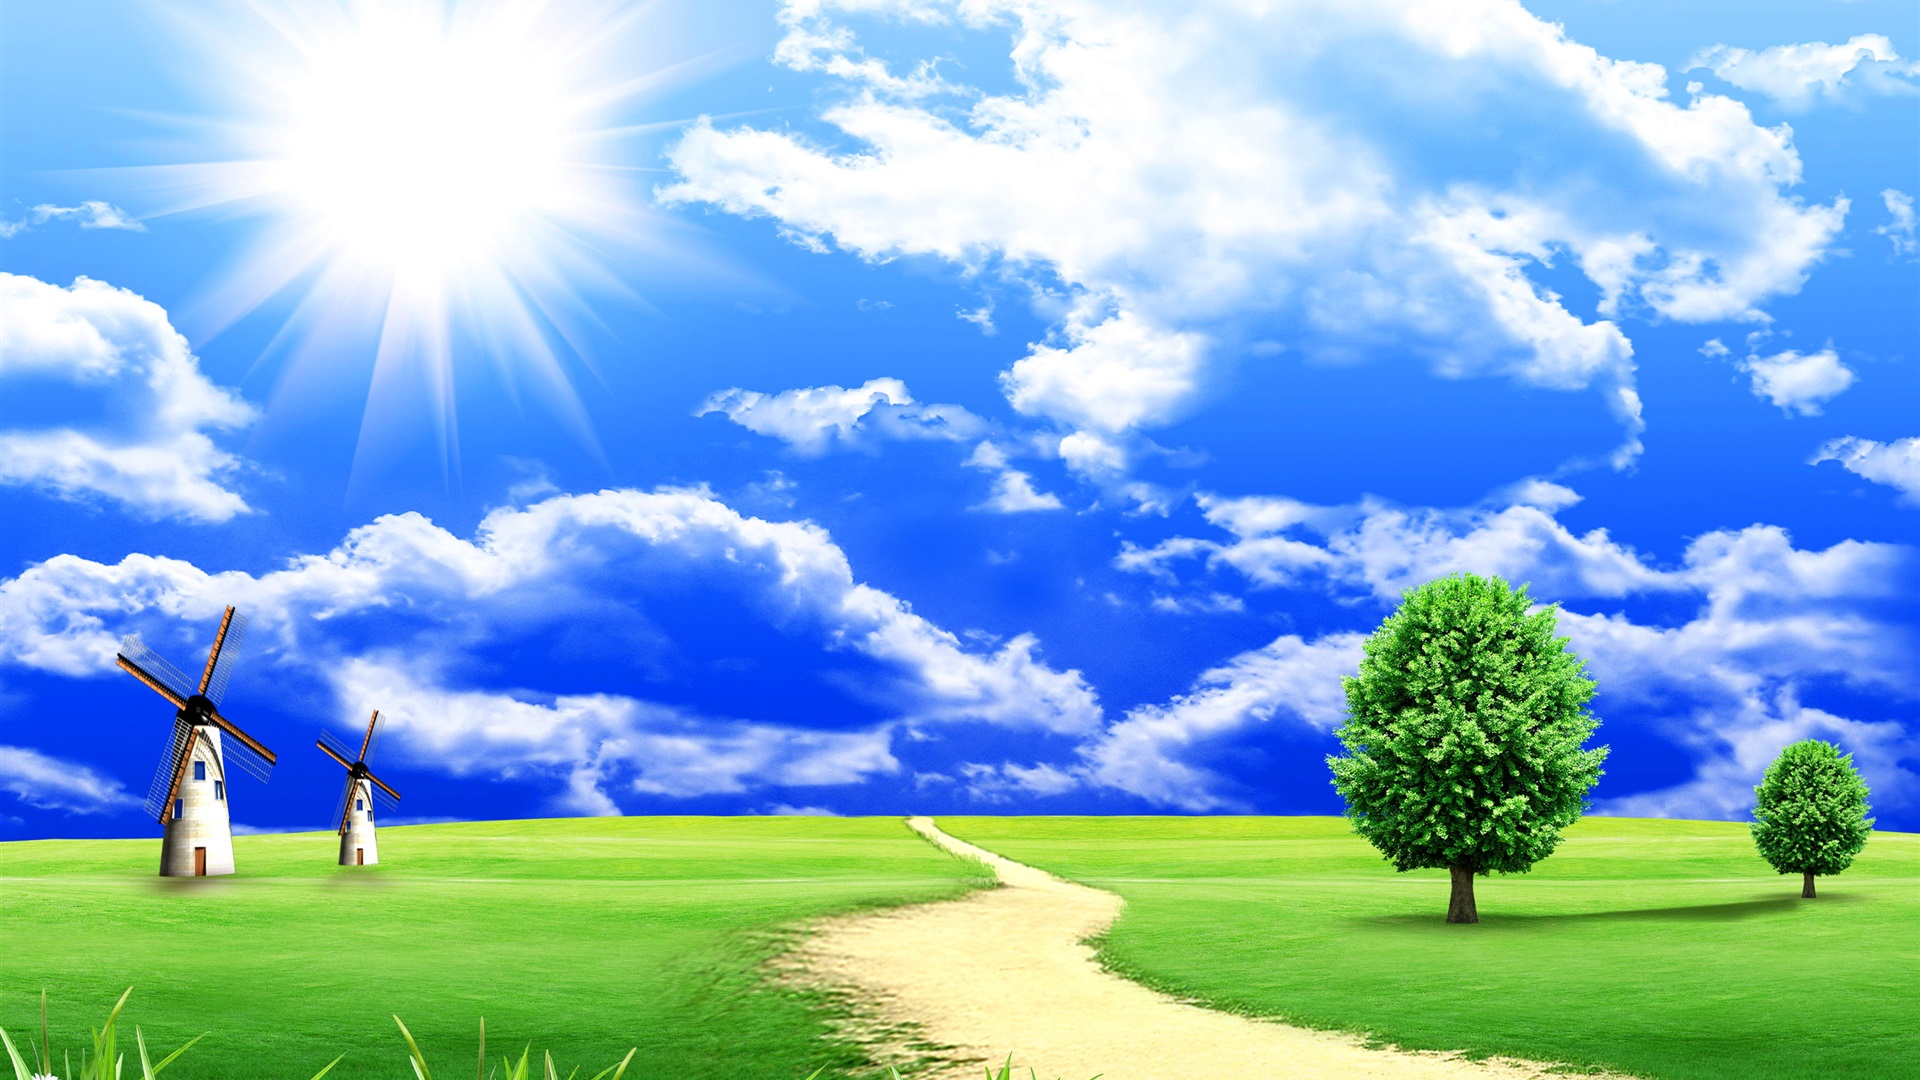 Dream - world - grass - trees - clouds - blue - sky - road - windmills_1920x1080.jpg